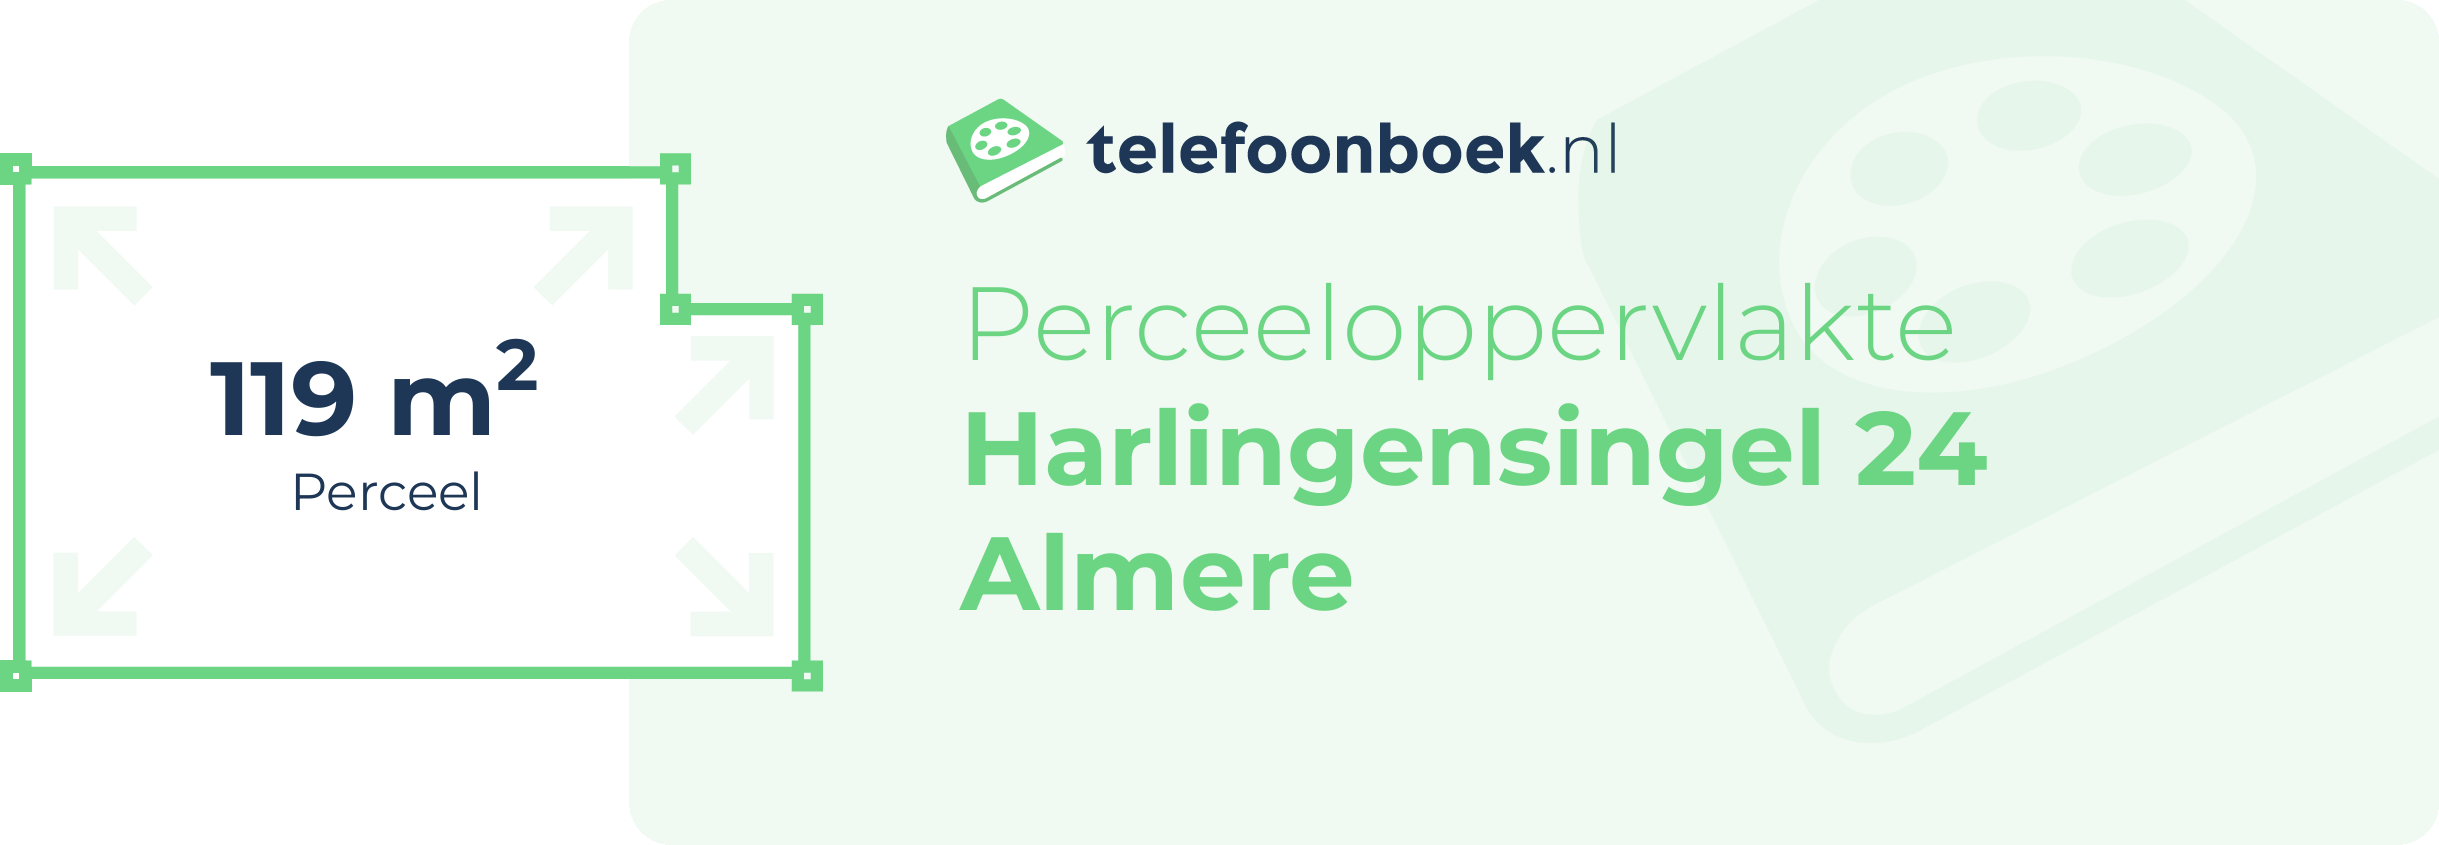 Perceeloppervlakte Harlingensingel 24 Almere